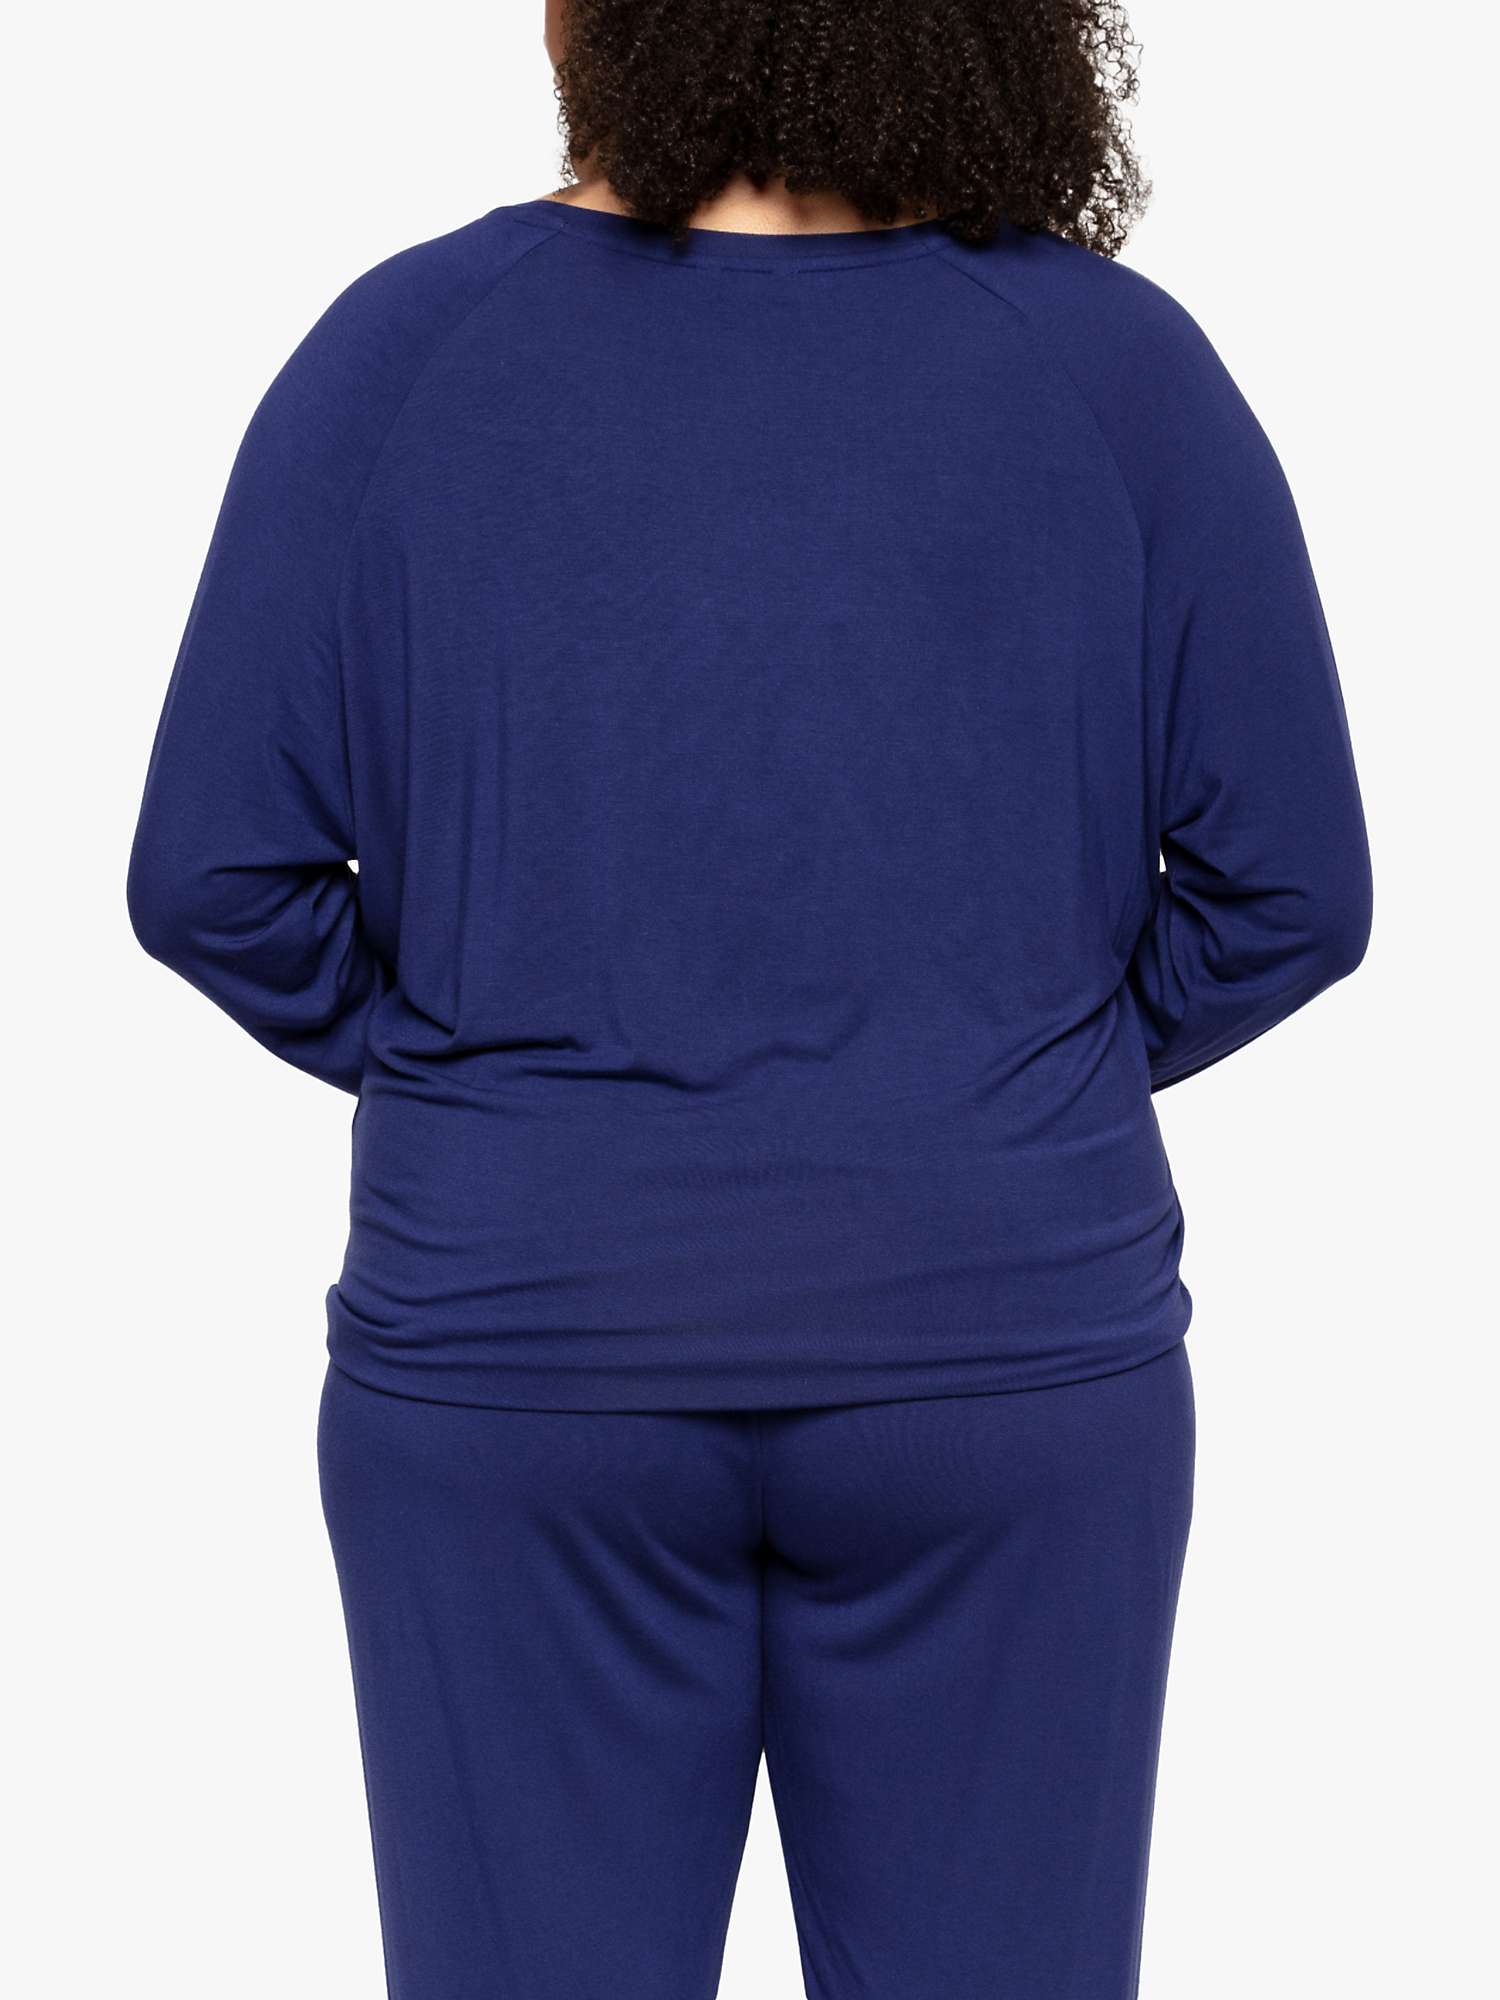 Buy Cyberjammies Riley Slouch Pyjama Top, Navy Online at johnlewis.com